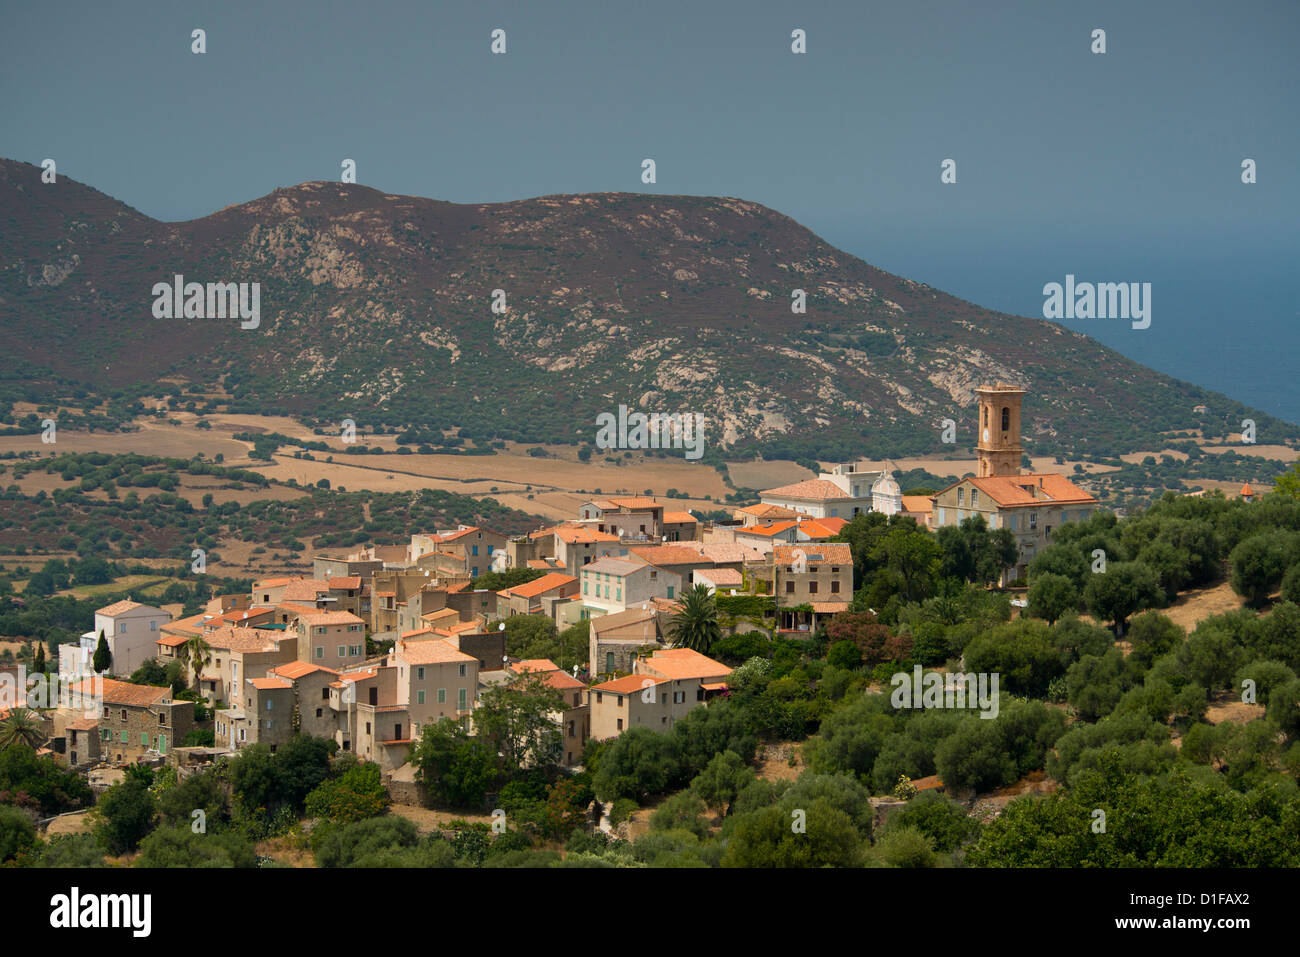 Une vue sur le pittoresque village d'Aregno à l'intérieur de la Haute Balagne, Corse, France, Europe, Méditerranée Banque D'Images